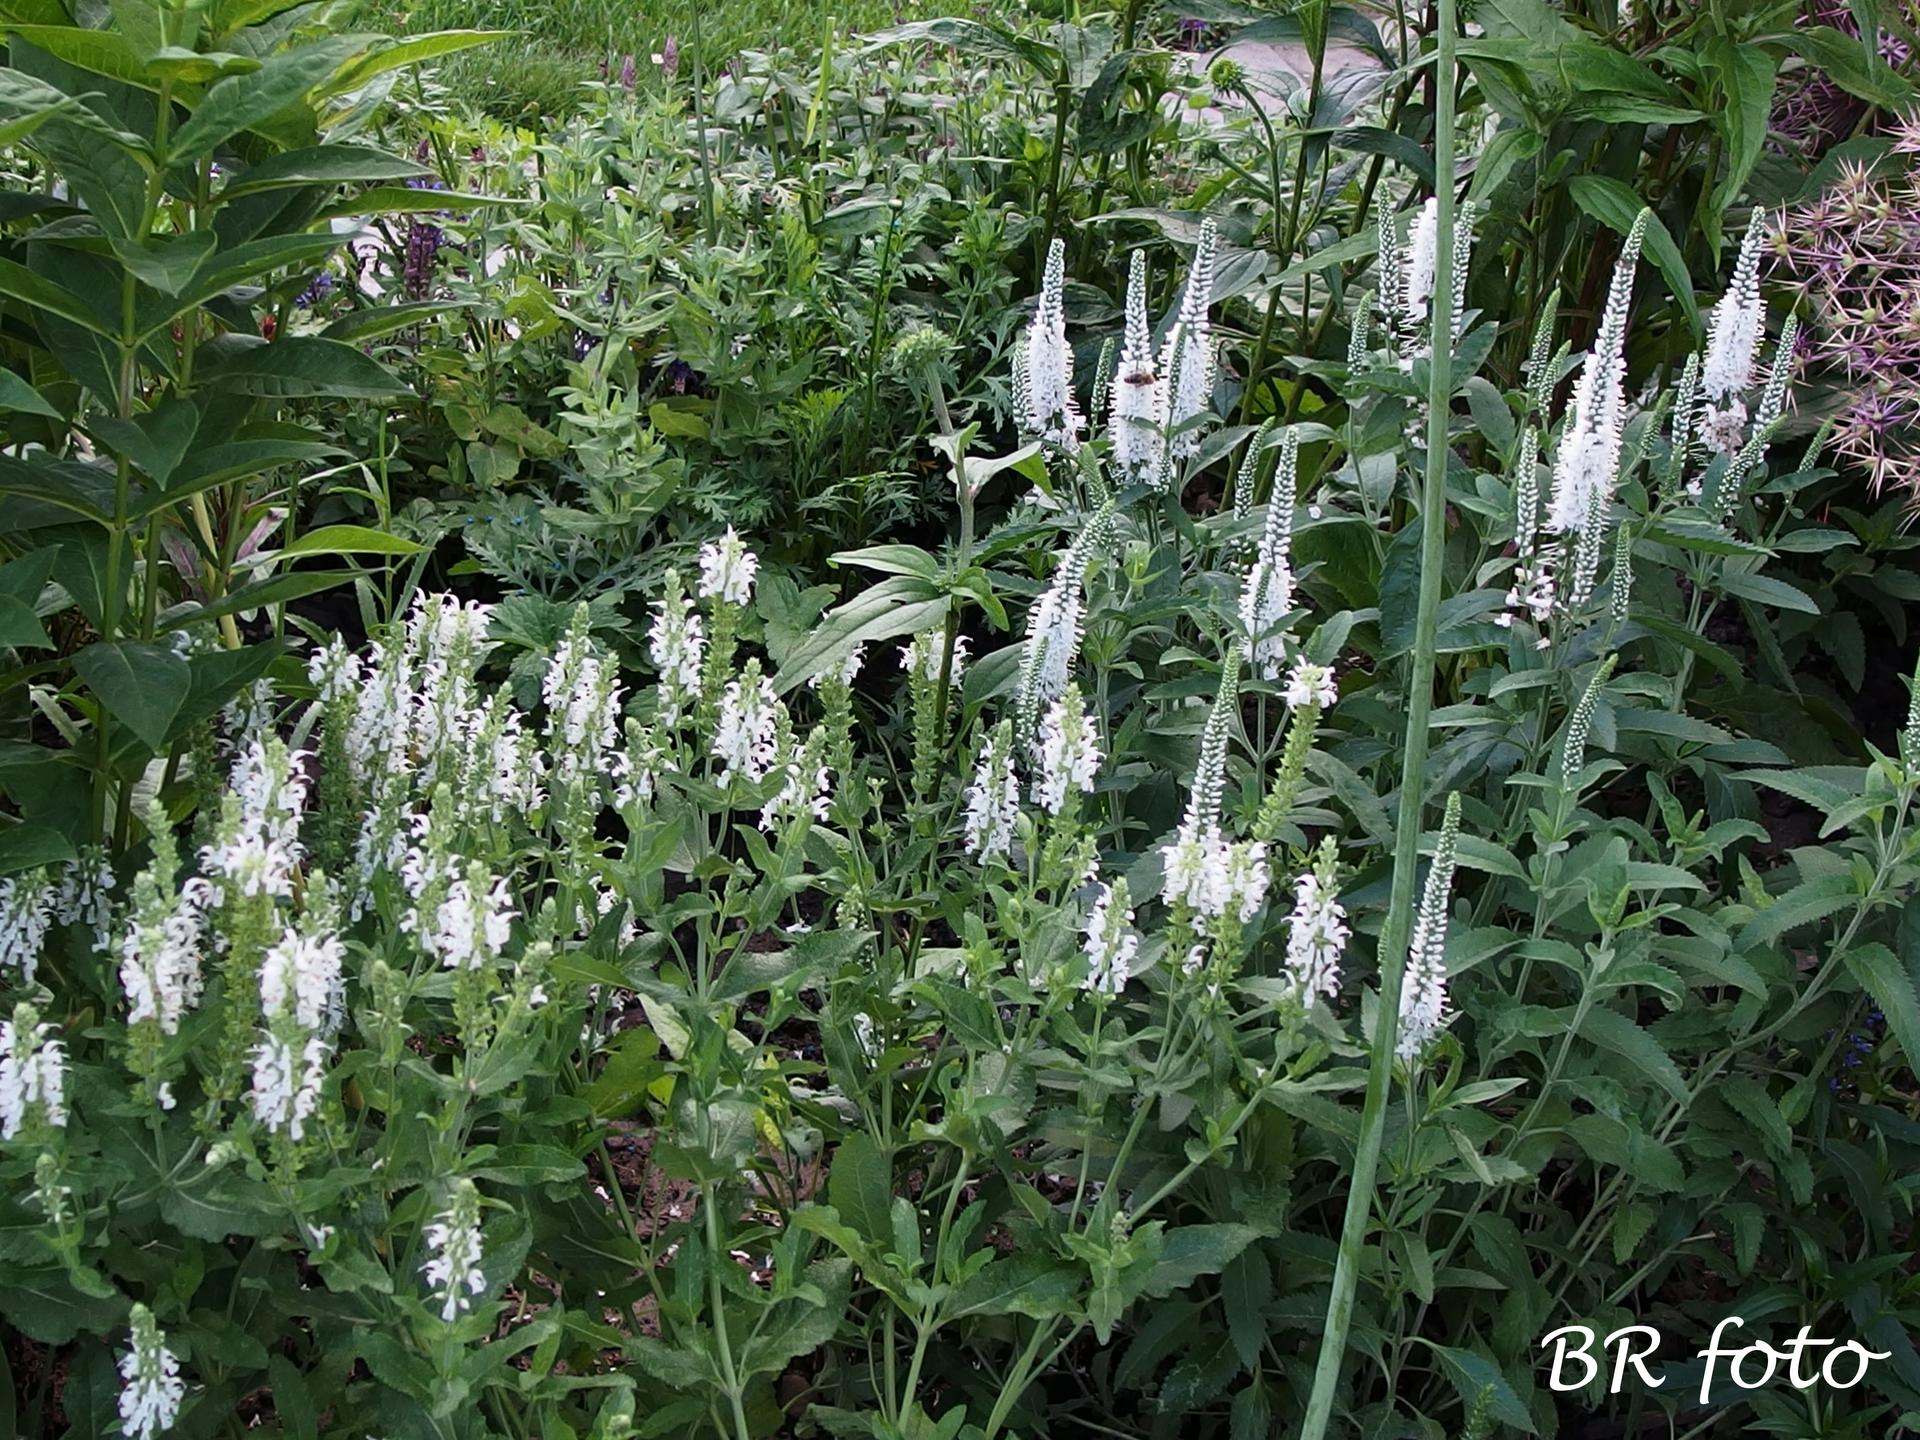 Zahrada v červnu - vše roste a kvete jako o život.... - vlevo bílá šalvěj, vpravo bílý rozrazil - mají podobná květenství i listy